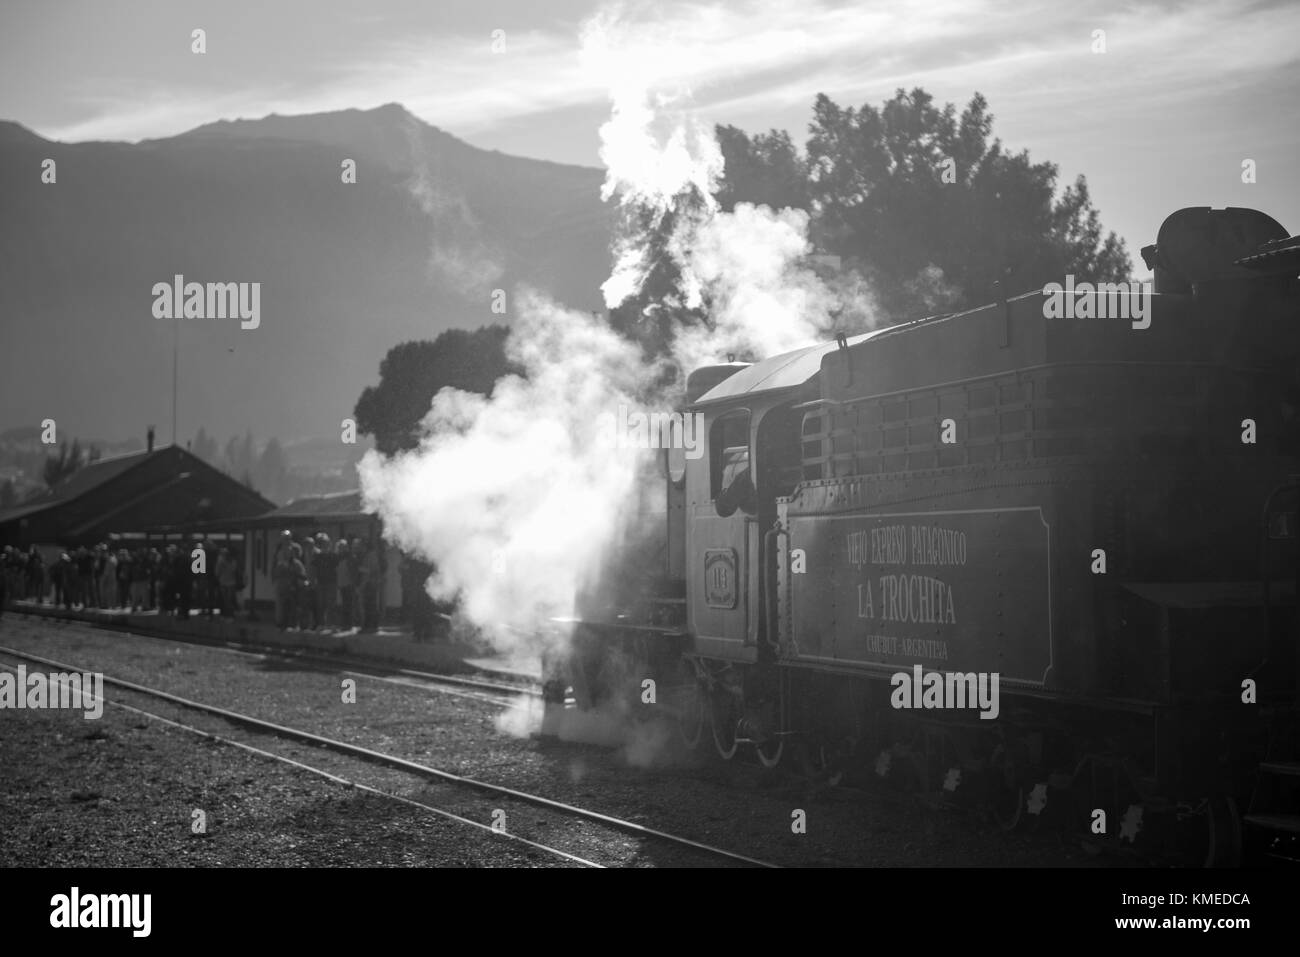 Train arrivant à la gare ferroviaire bondée, Esquel, Chubut, Argentine Banque D'Images